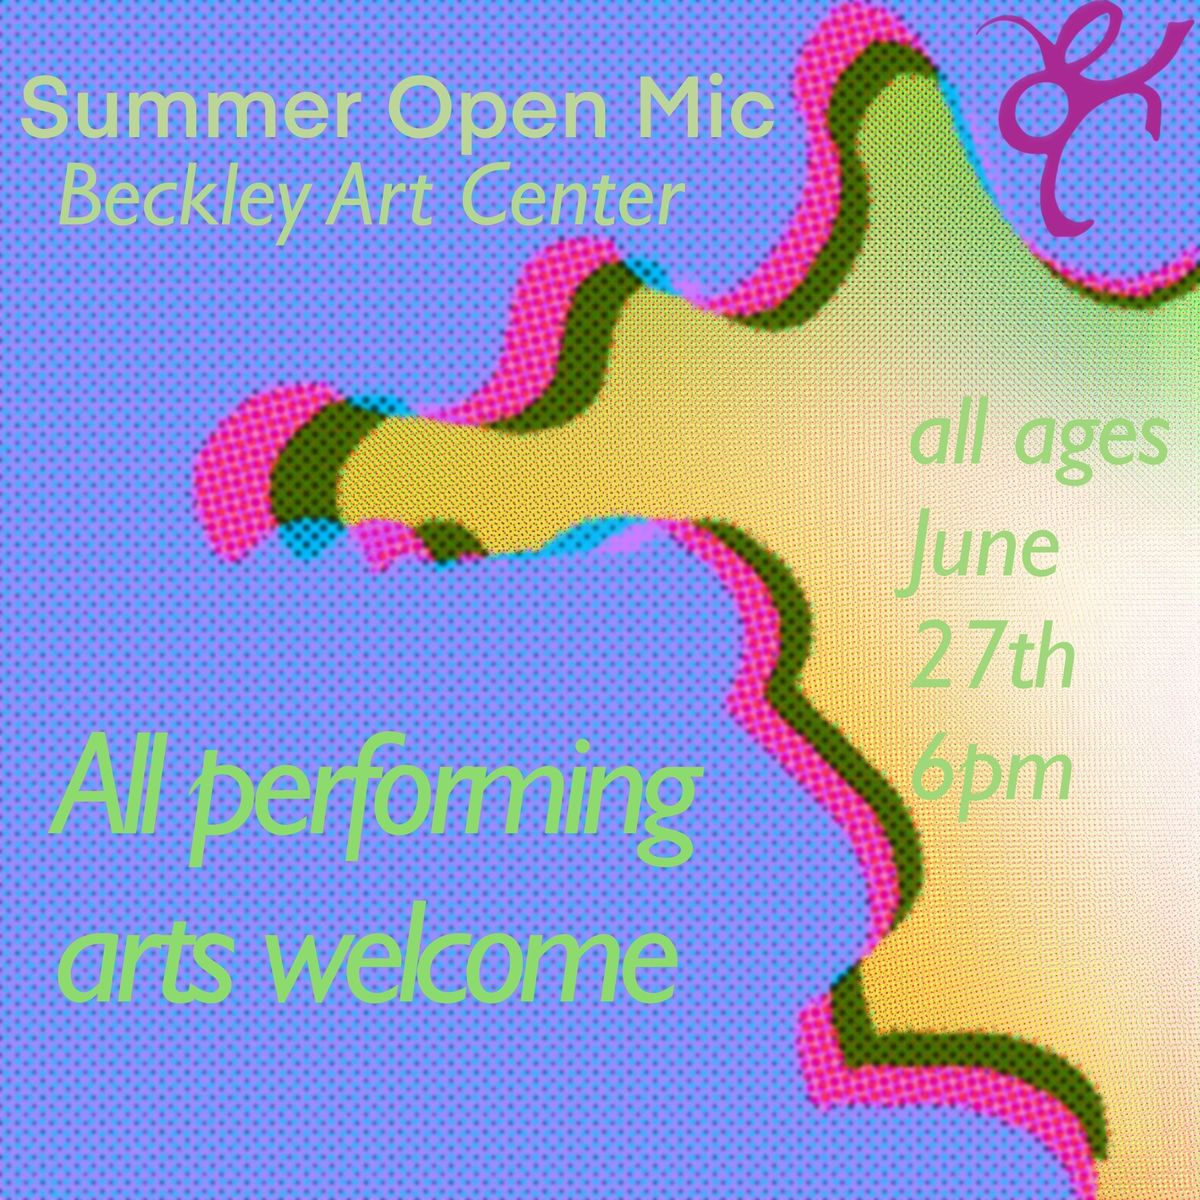 Summer Open Mic at Beckley Art Center 